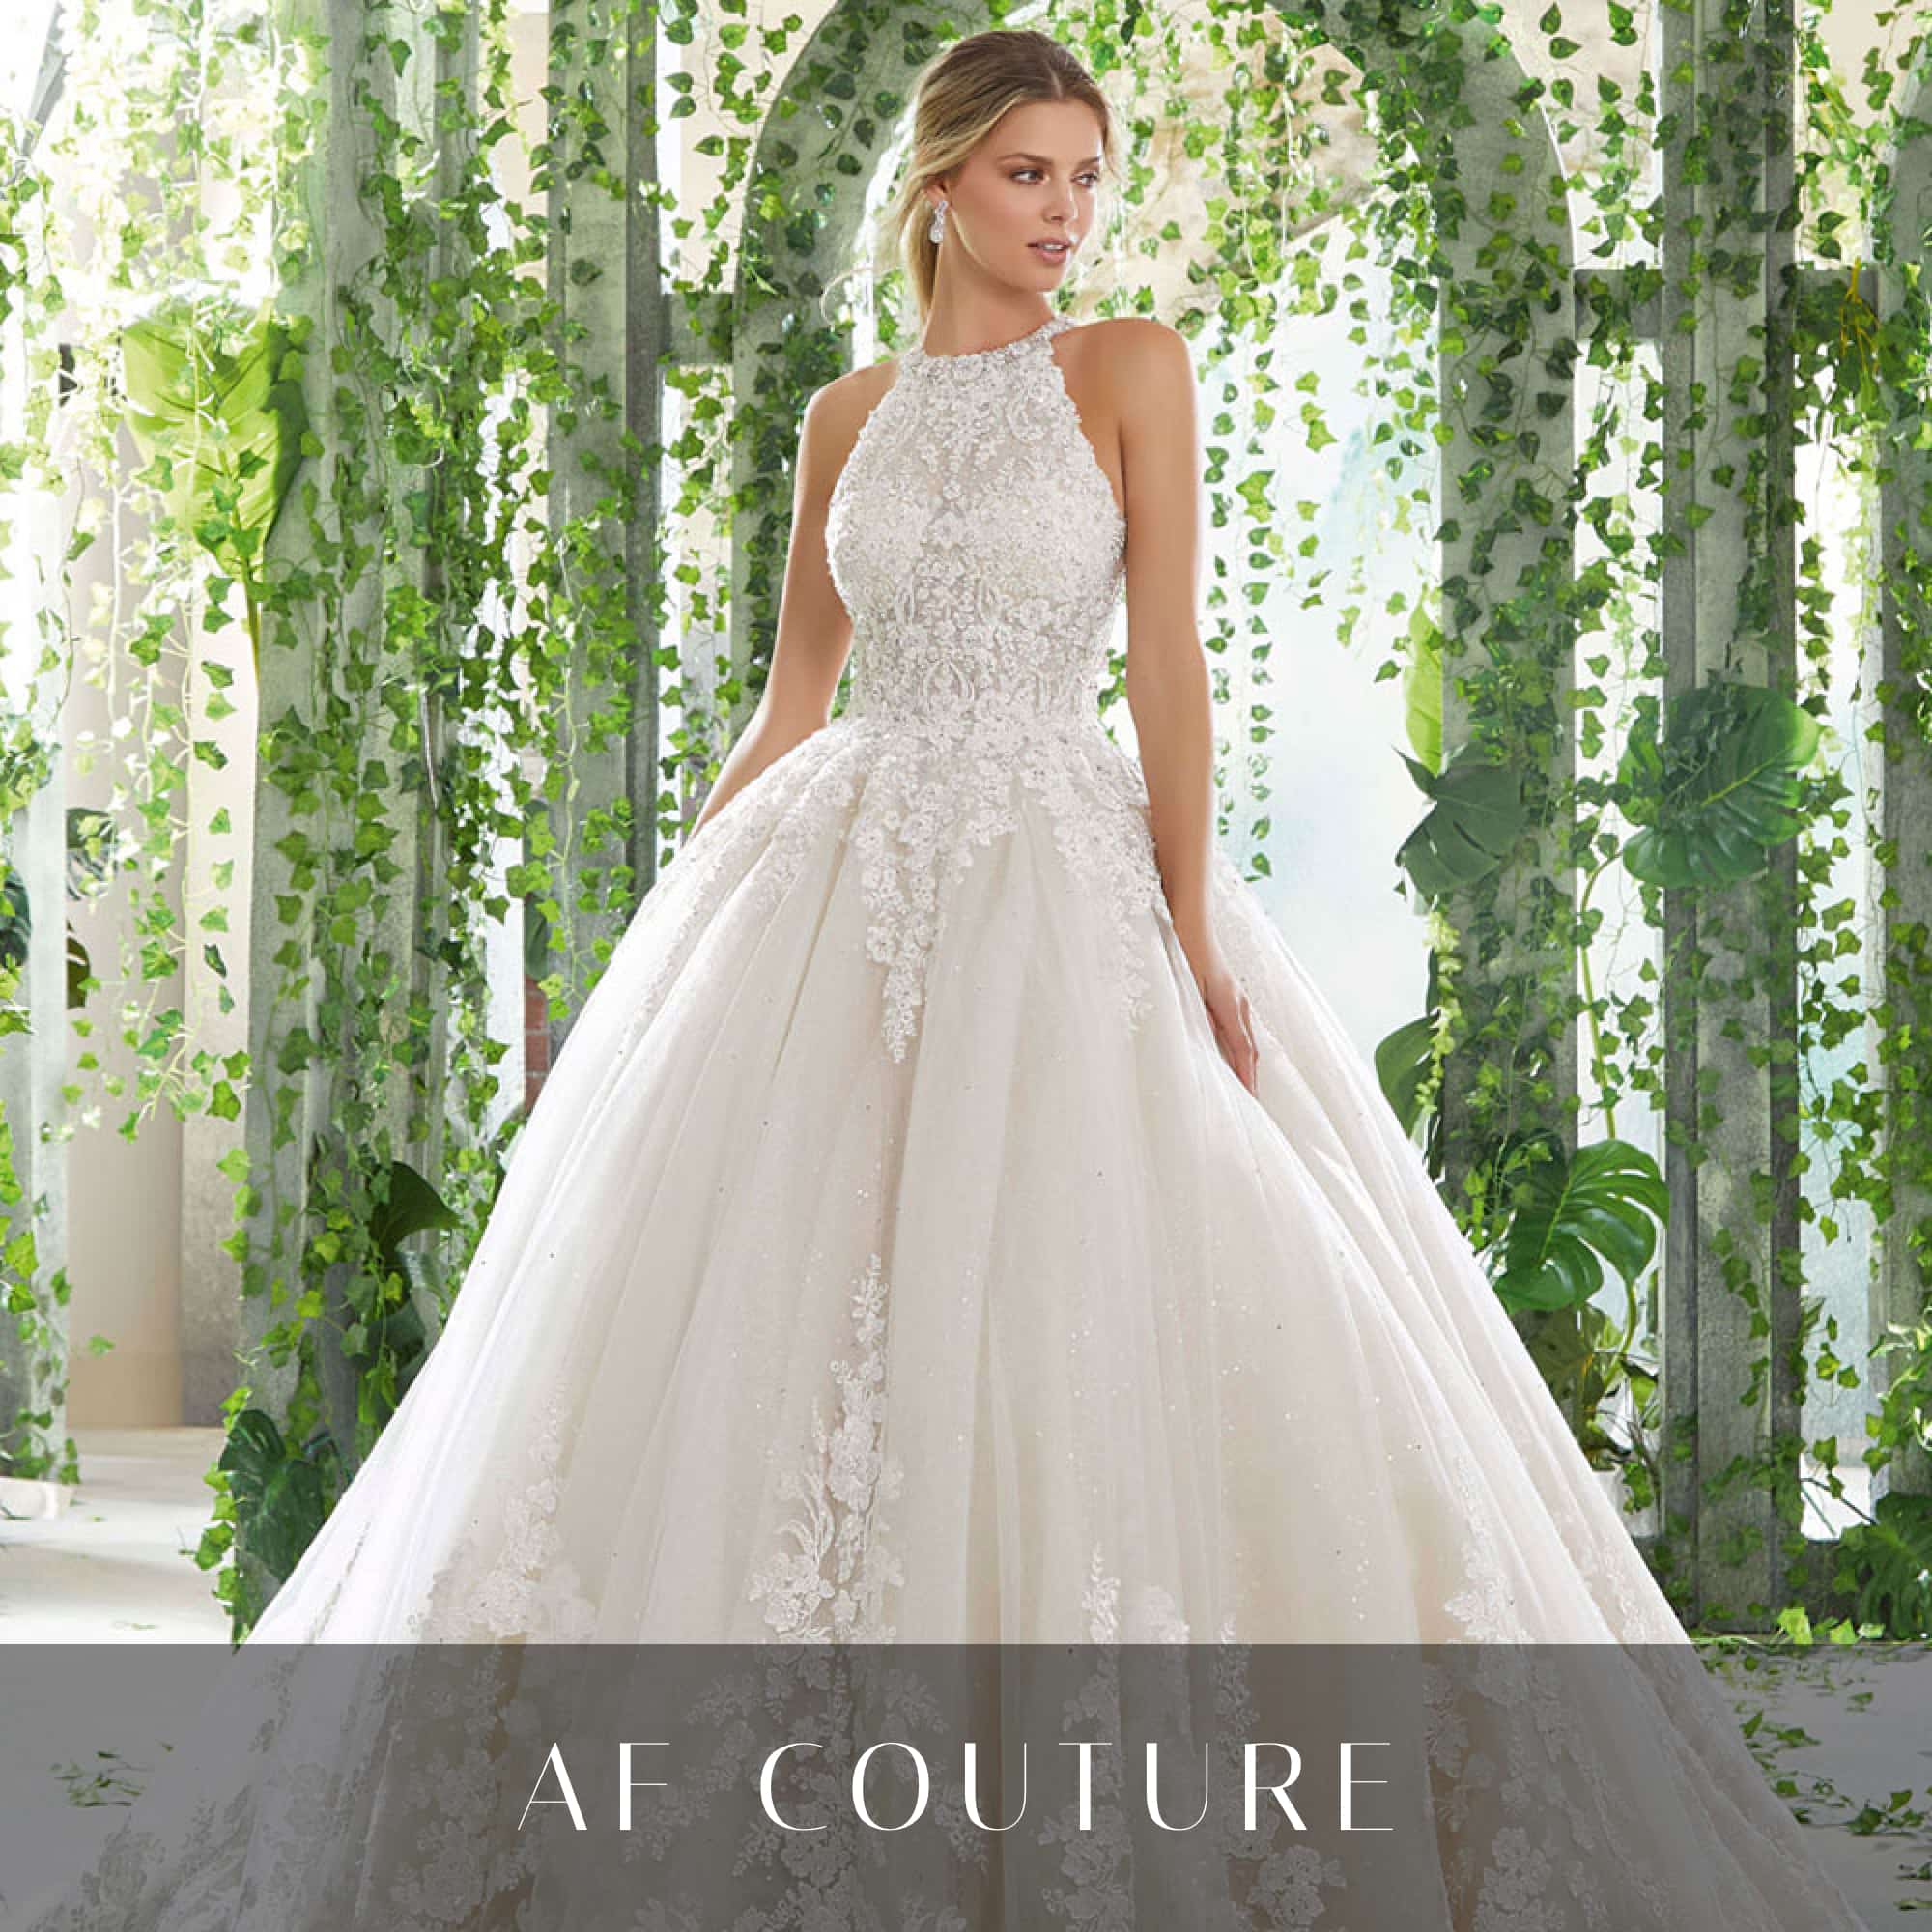 AF Couture Wedding Dresses